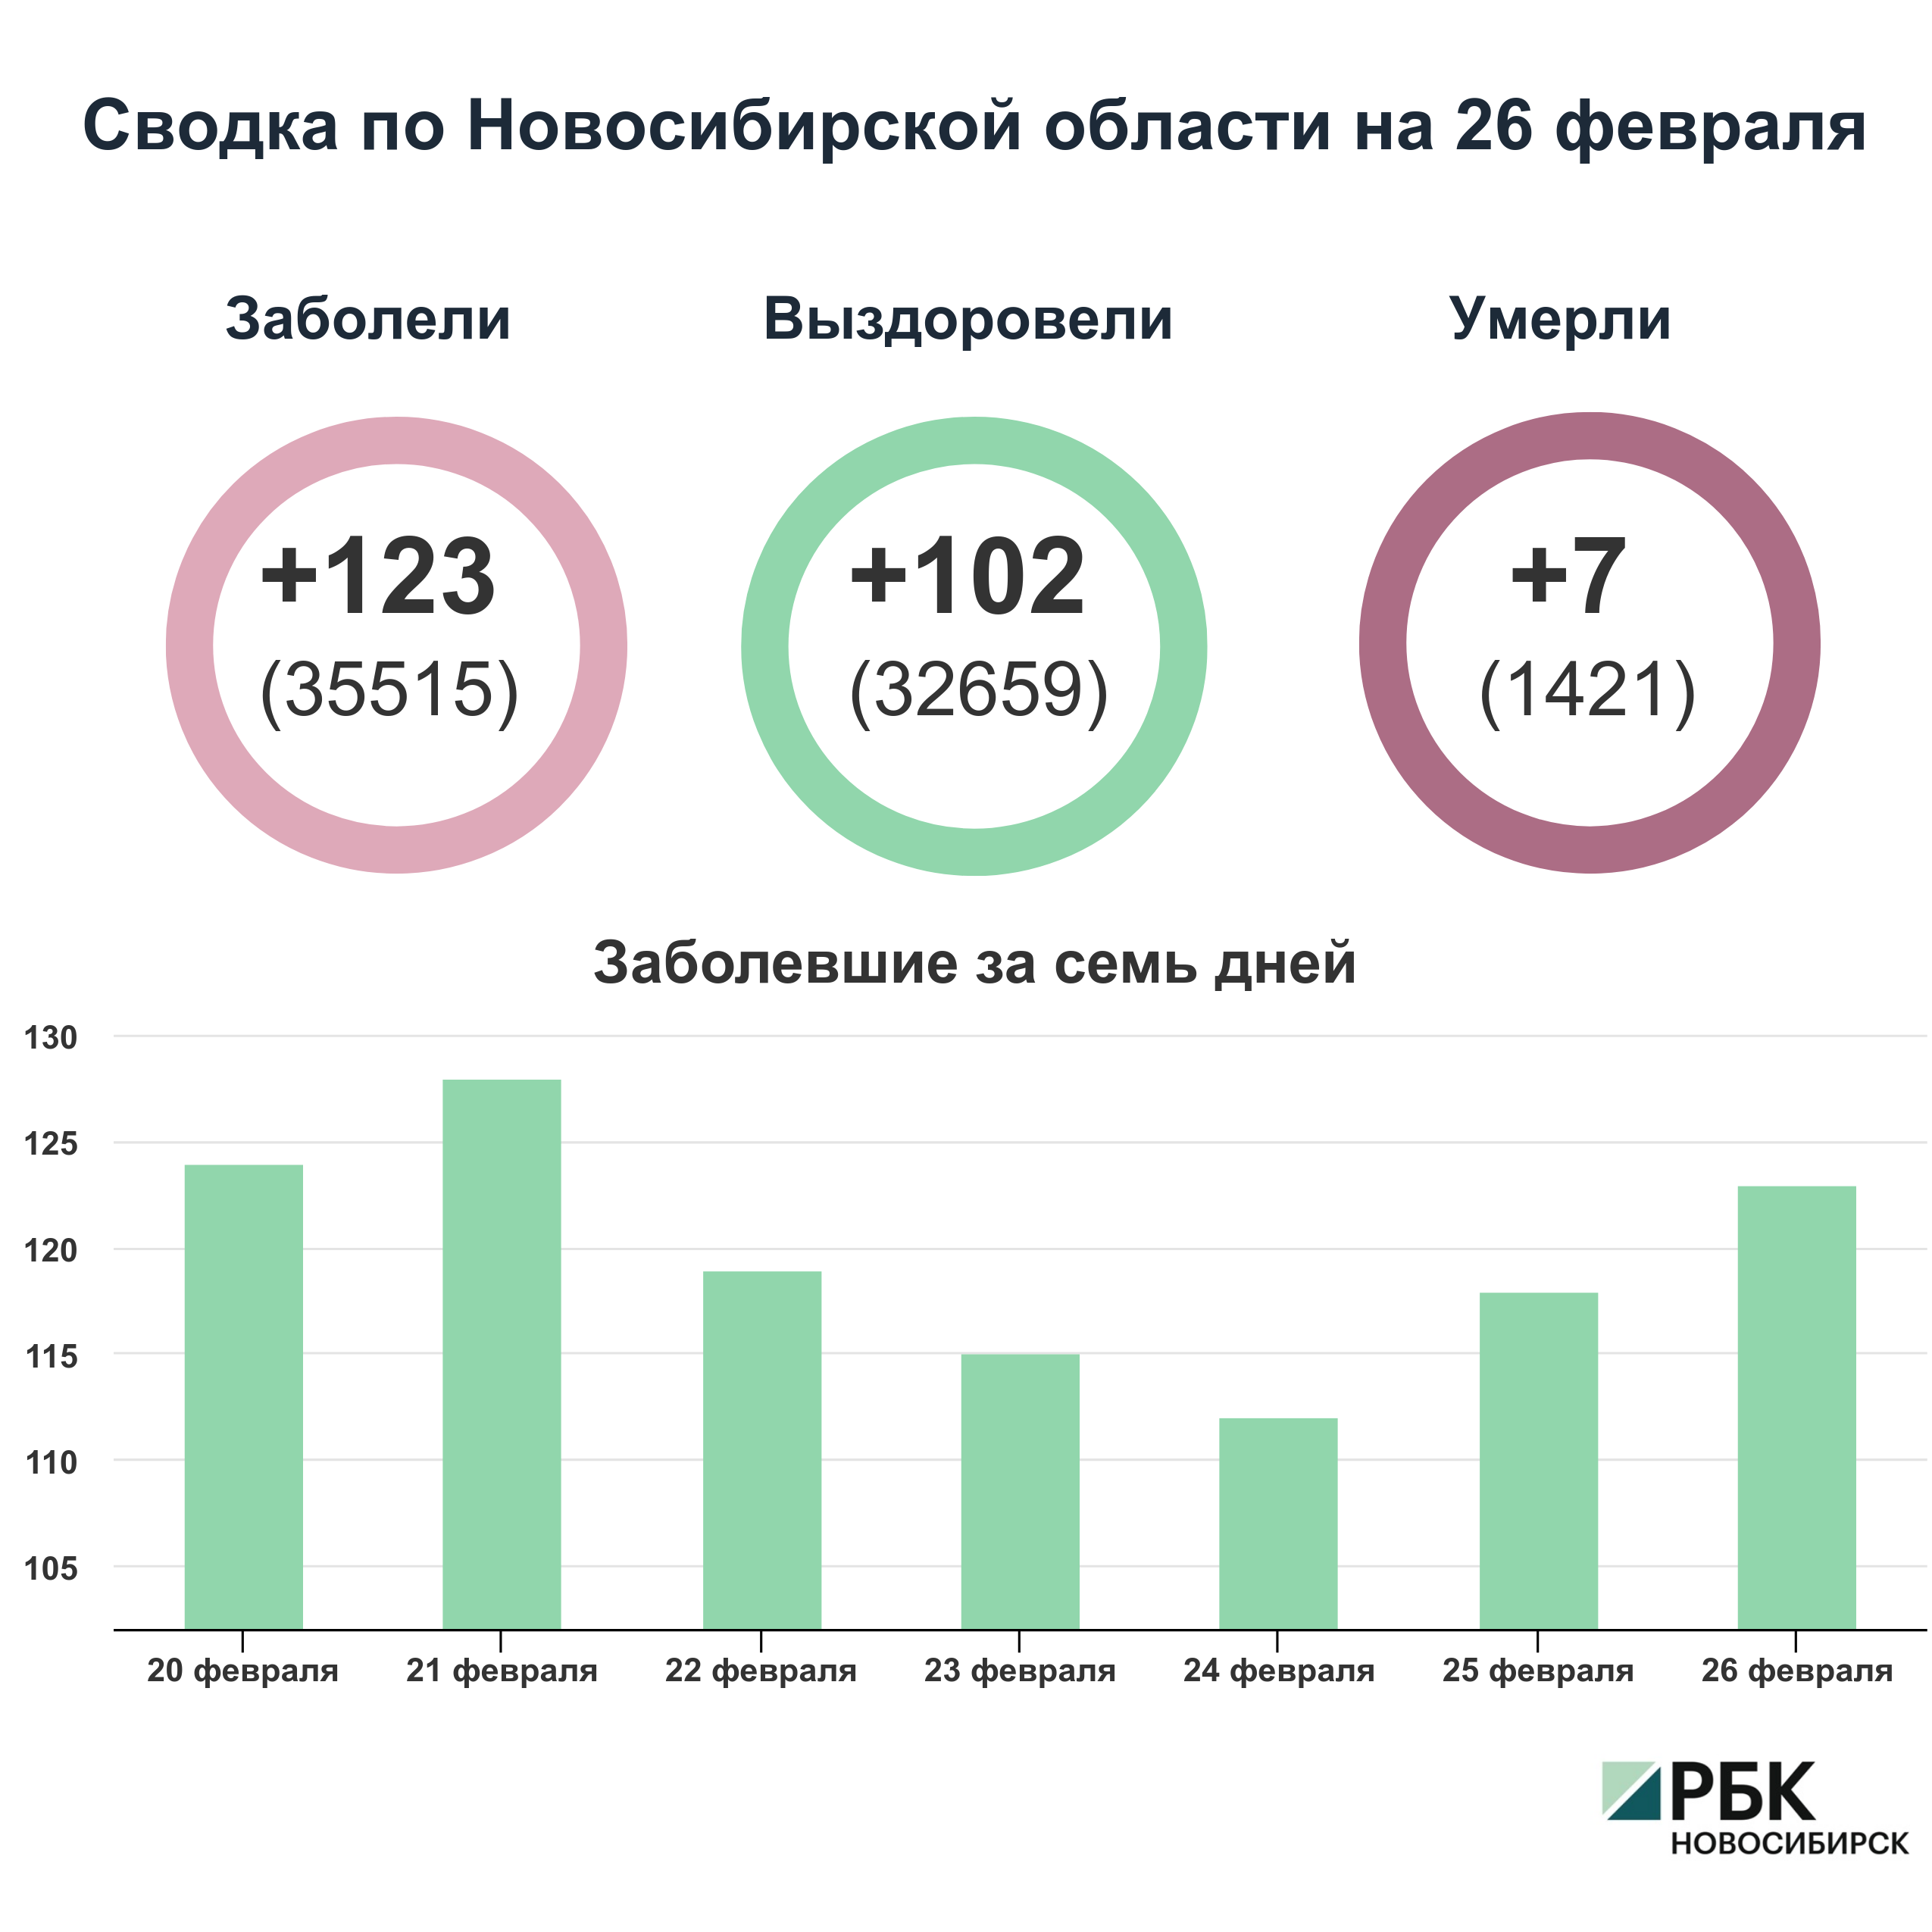 Коронавирус в Новосибирске: сводка на 26 февраля